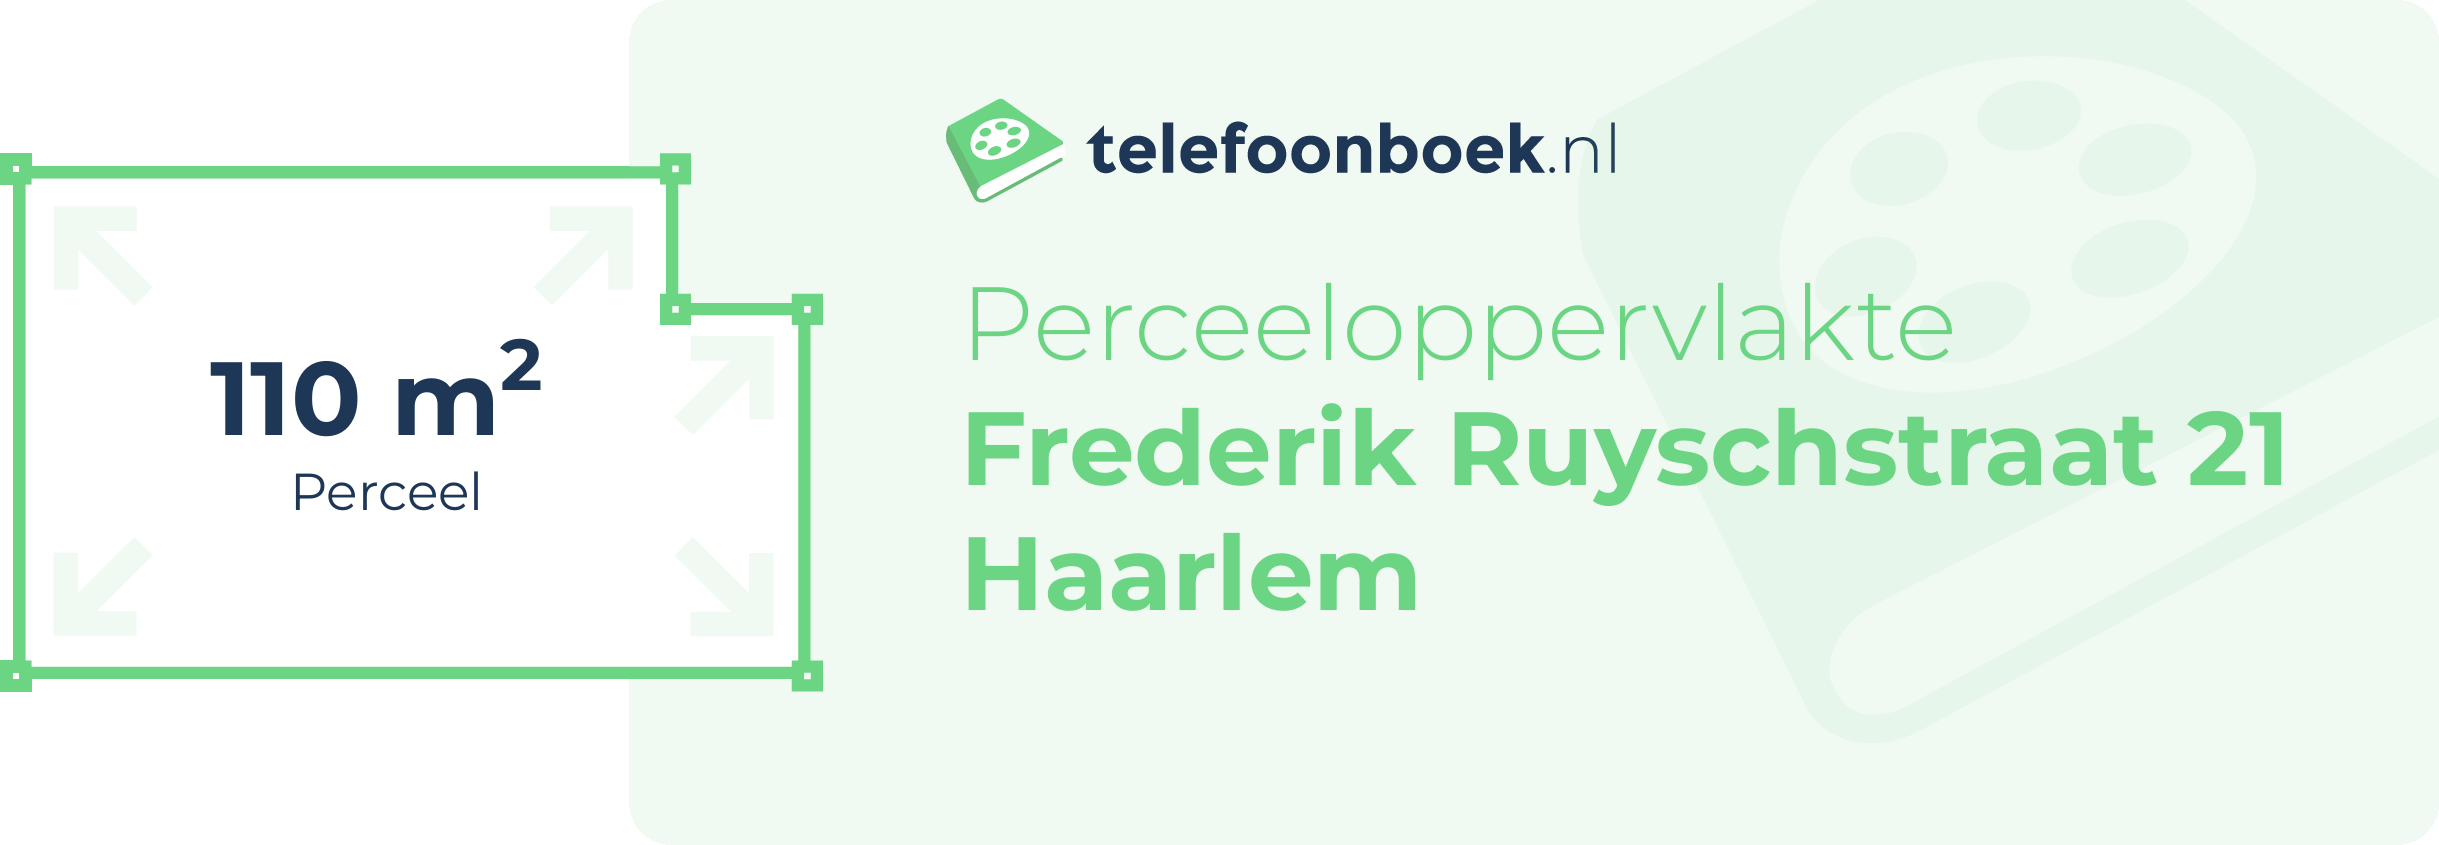 Perceeloppervlakte Frederik Ruyschstraat 21 Haarlem